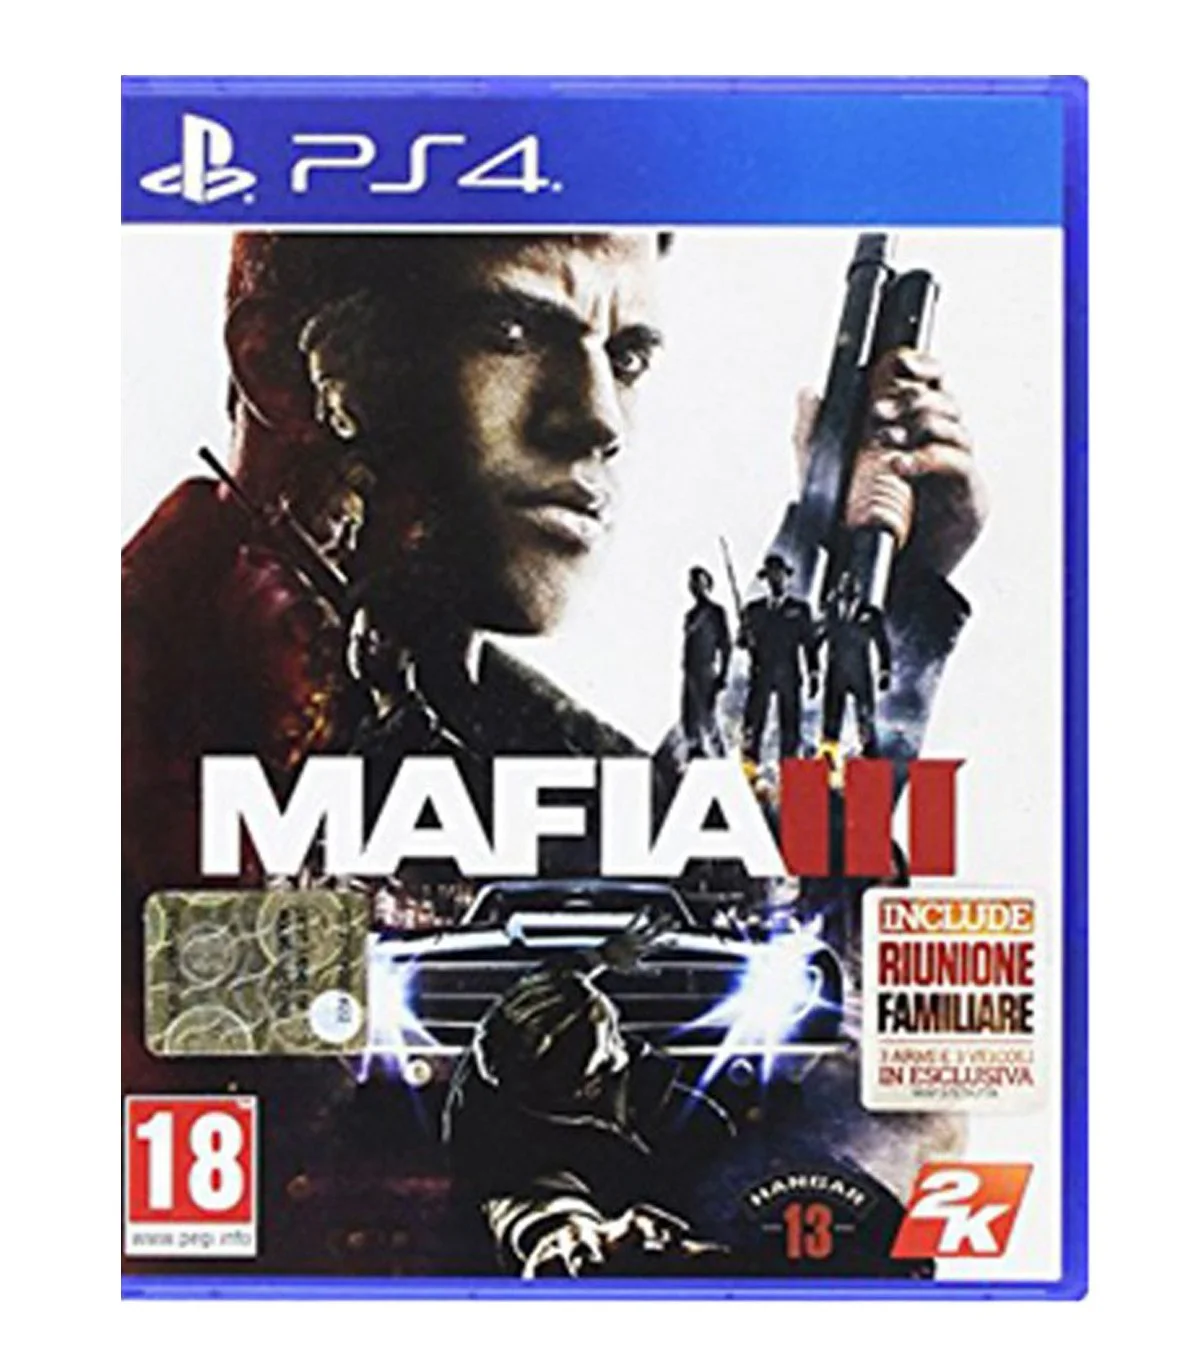 بازی Mafia III کارکرده - پلی استیشن 4